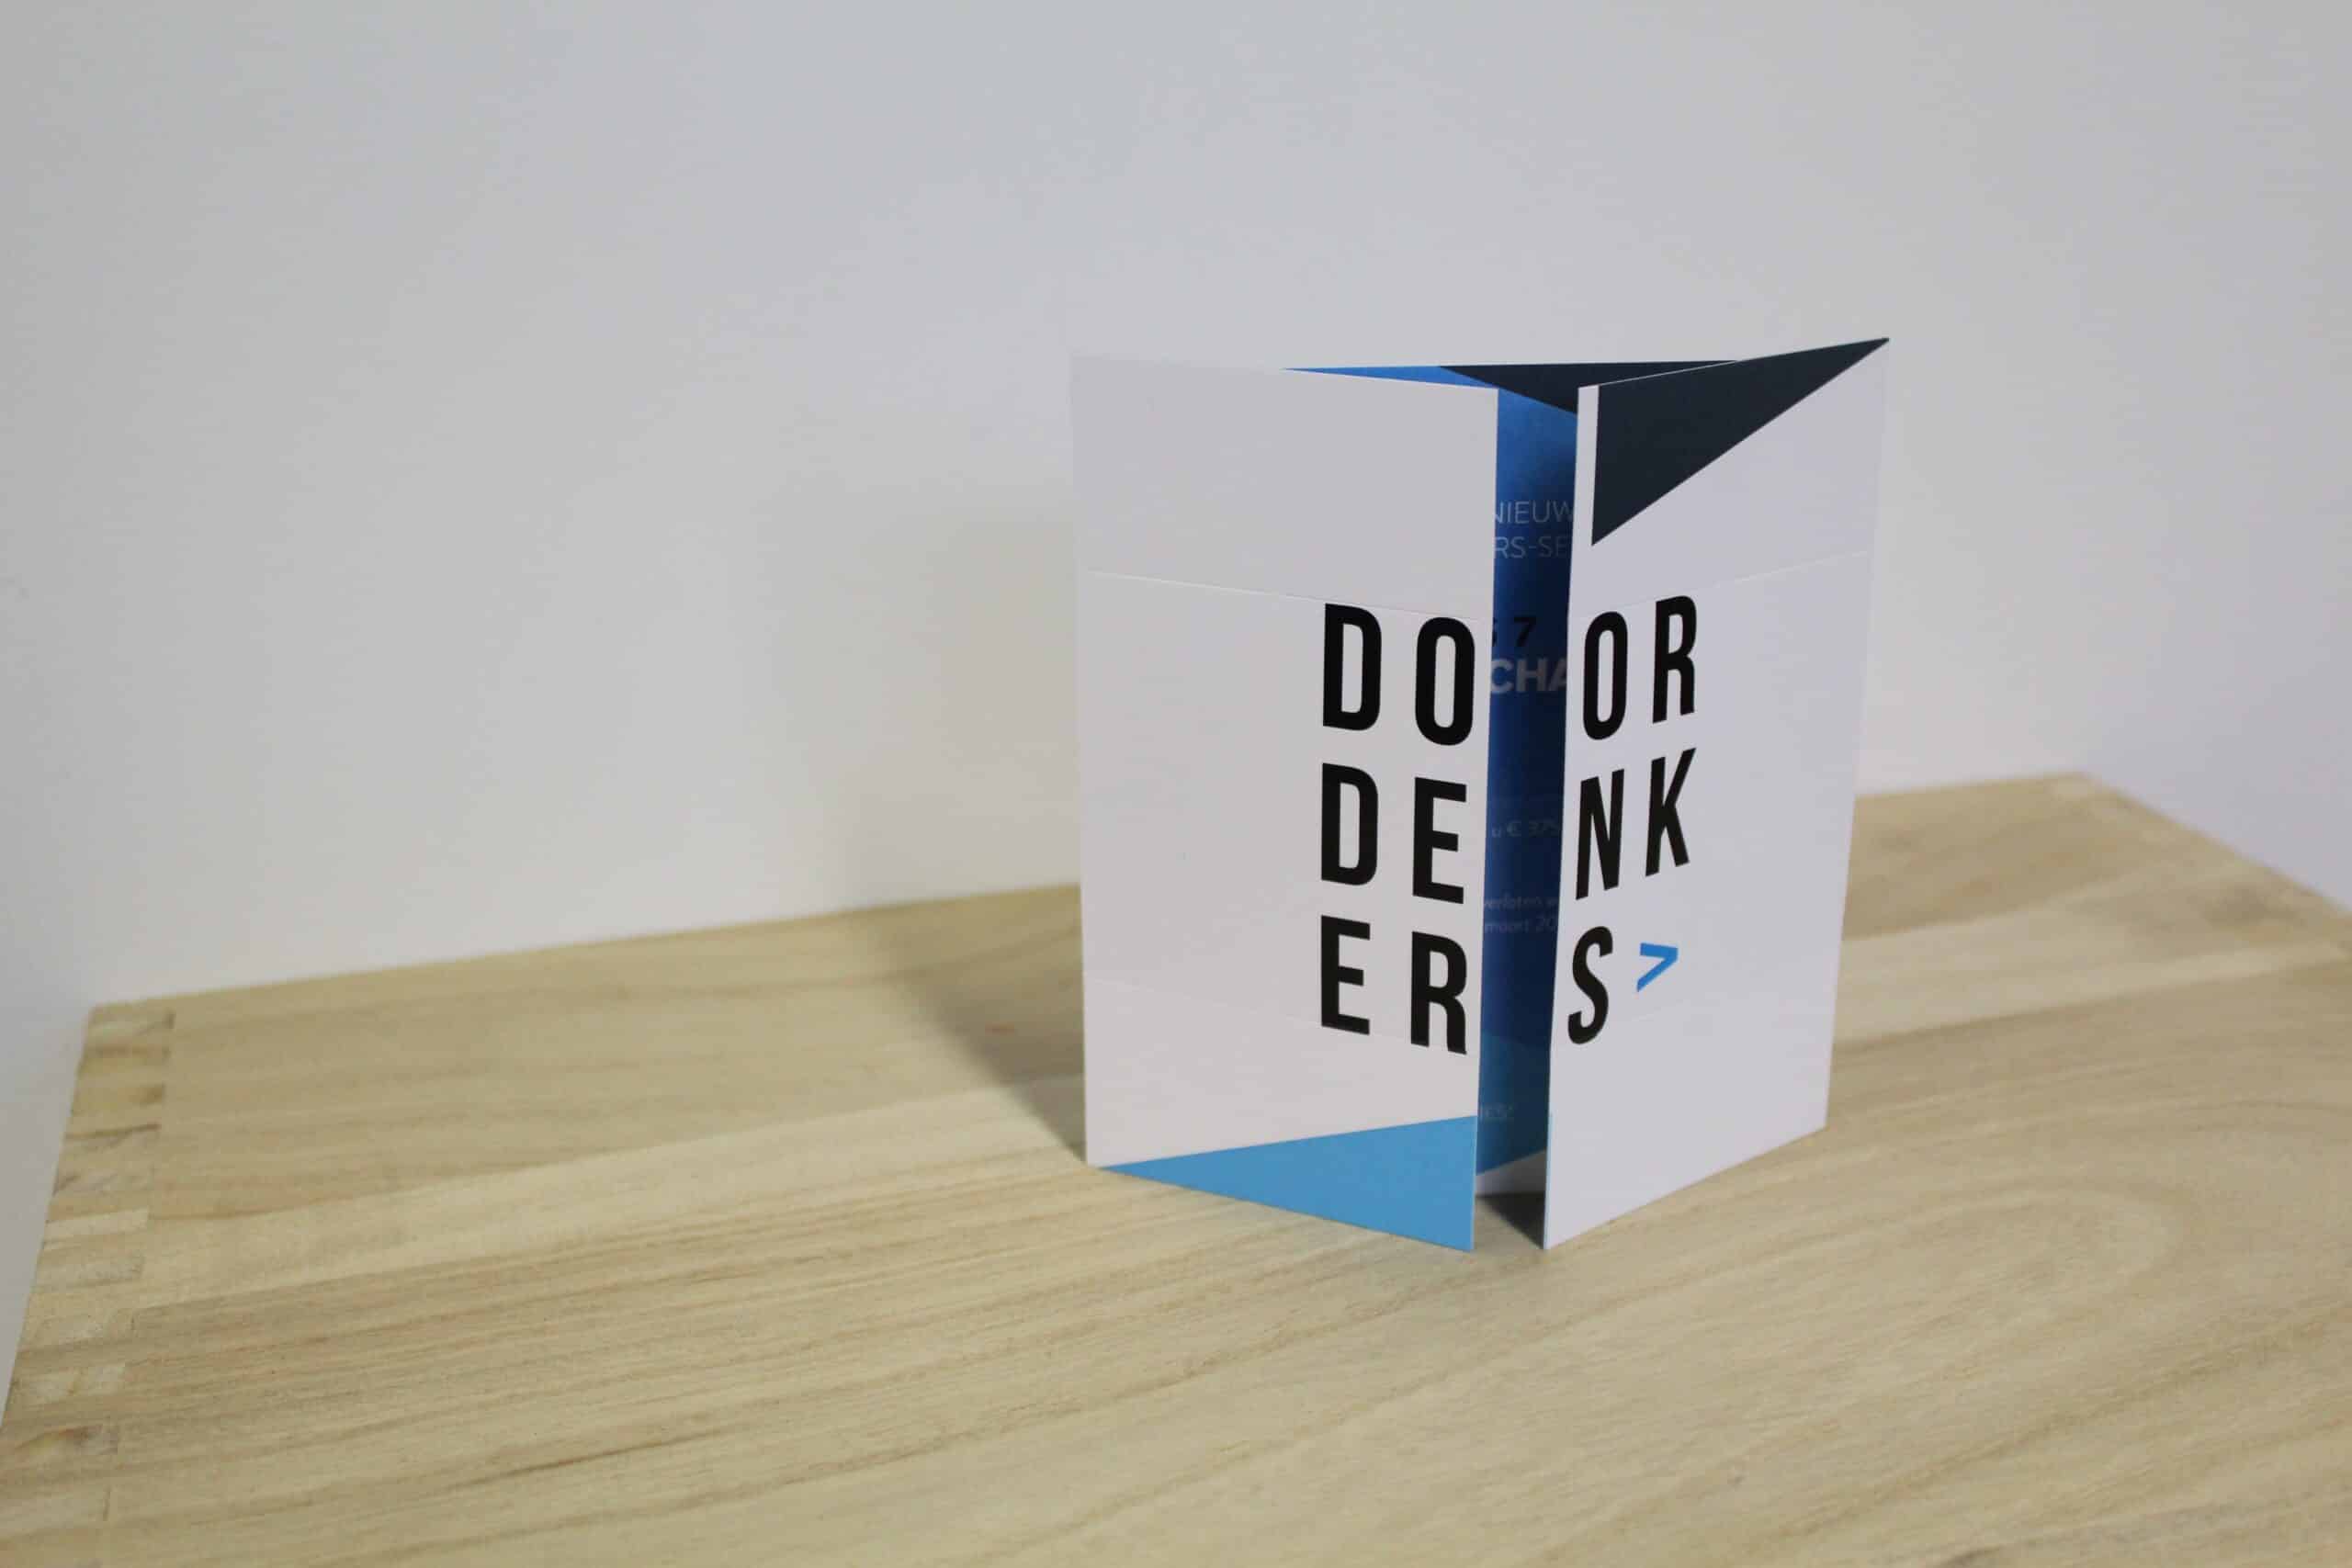 Case Direct Mailing Turning Card Vouwkaart Doordenkers